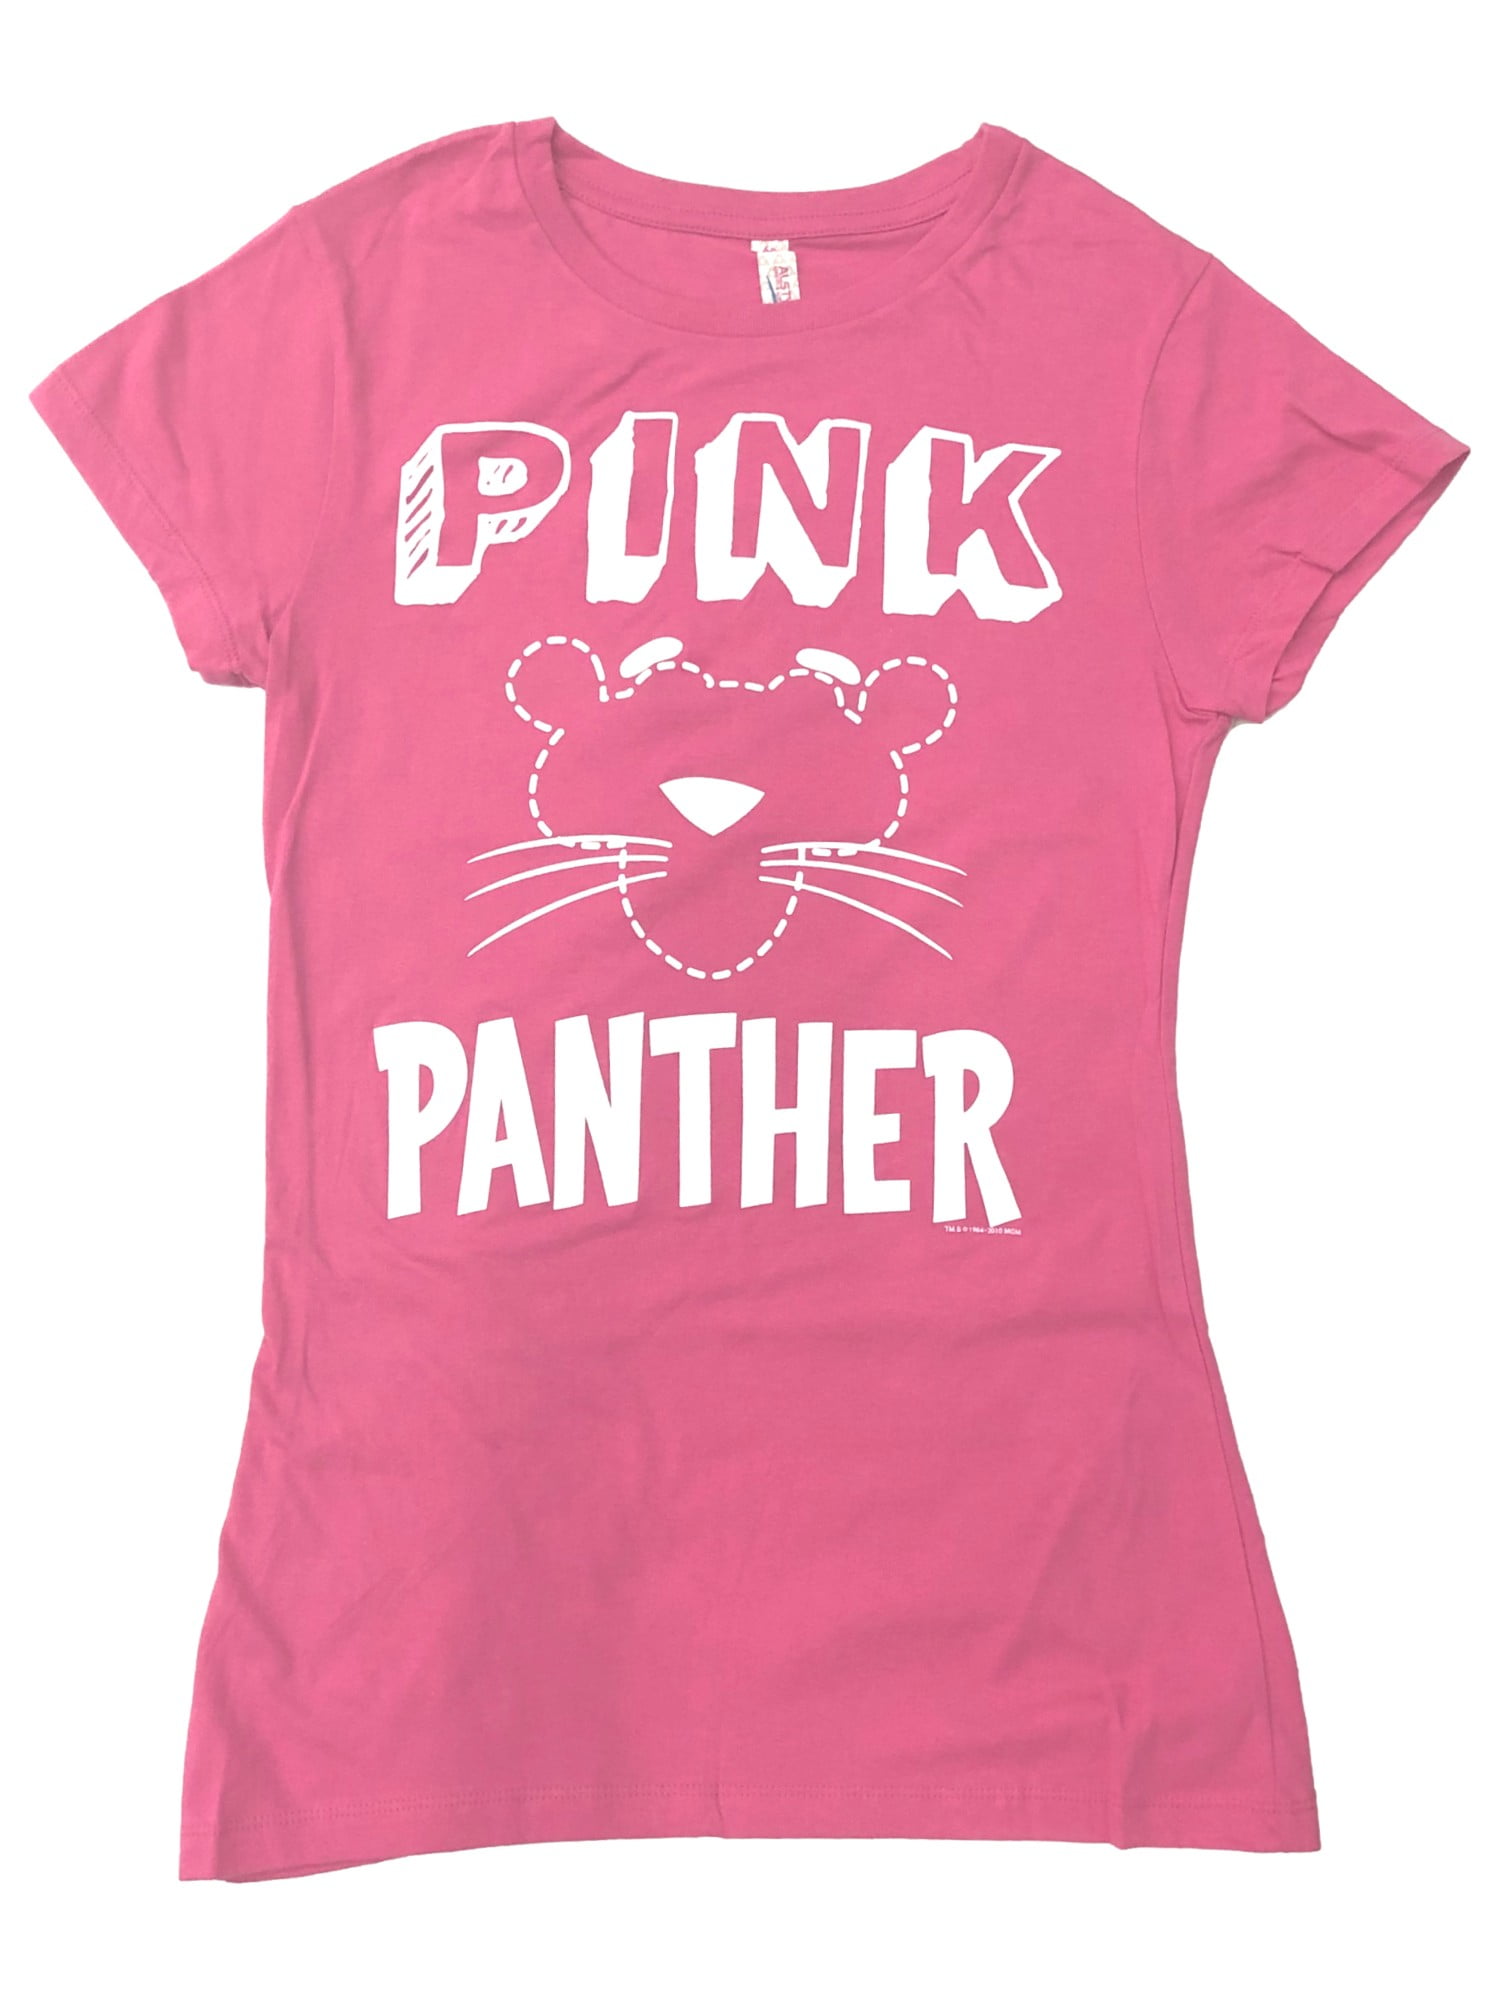 Het eens zijn met toekomst Dwang Womens Pink Panther Short Sleeve Top Tee Shirt T-Shirt X-Large - Walmart.com